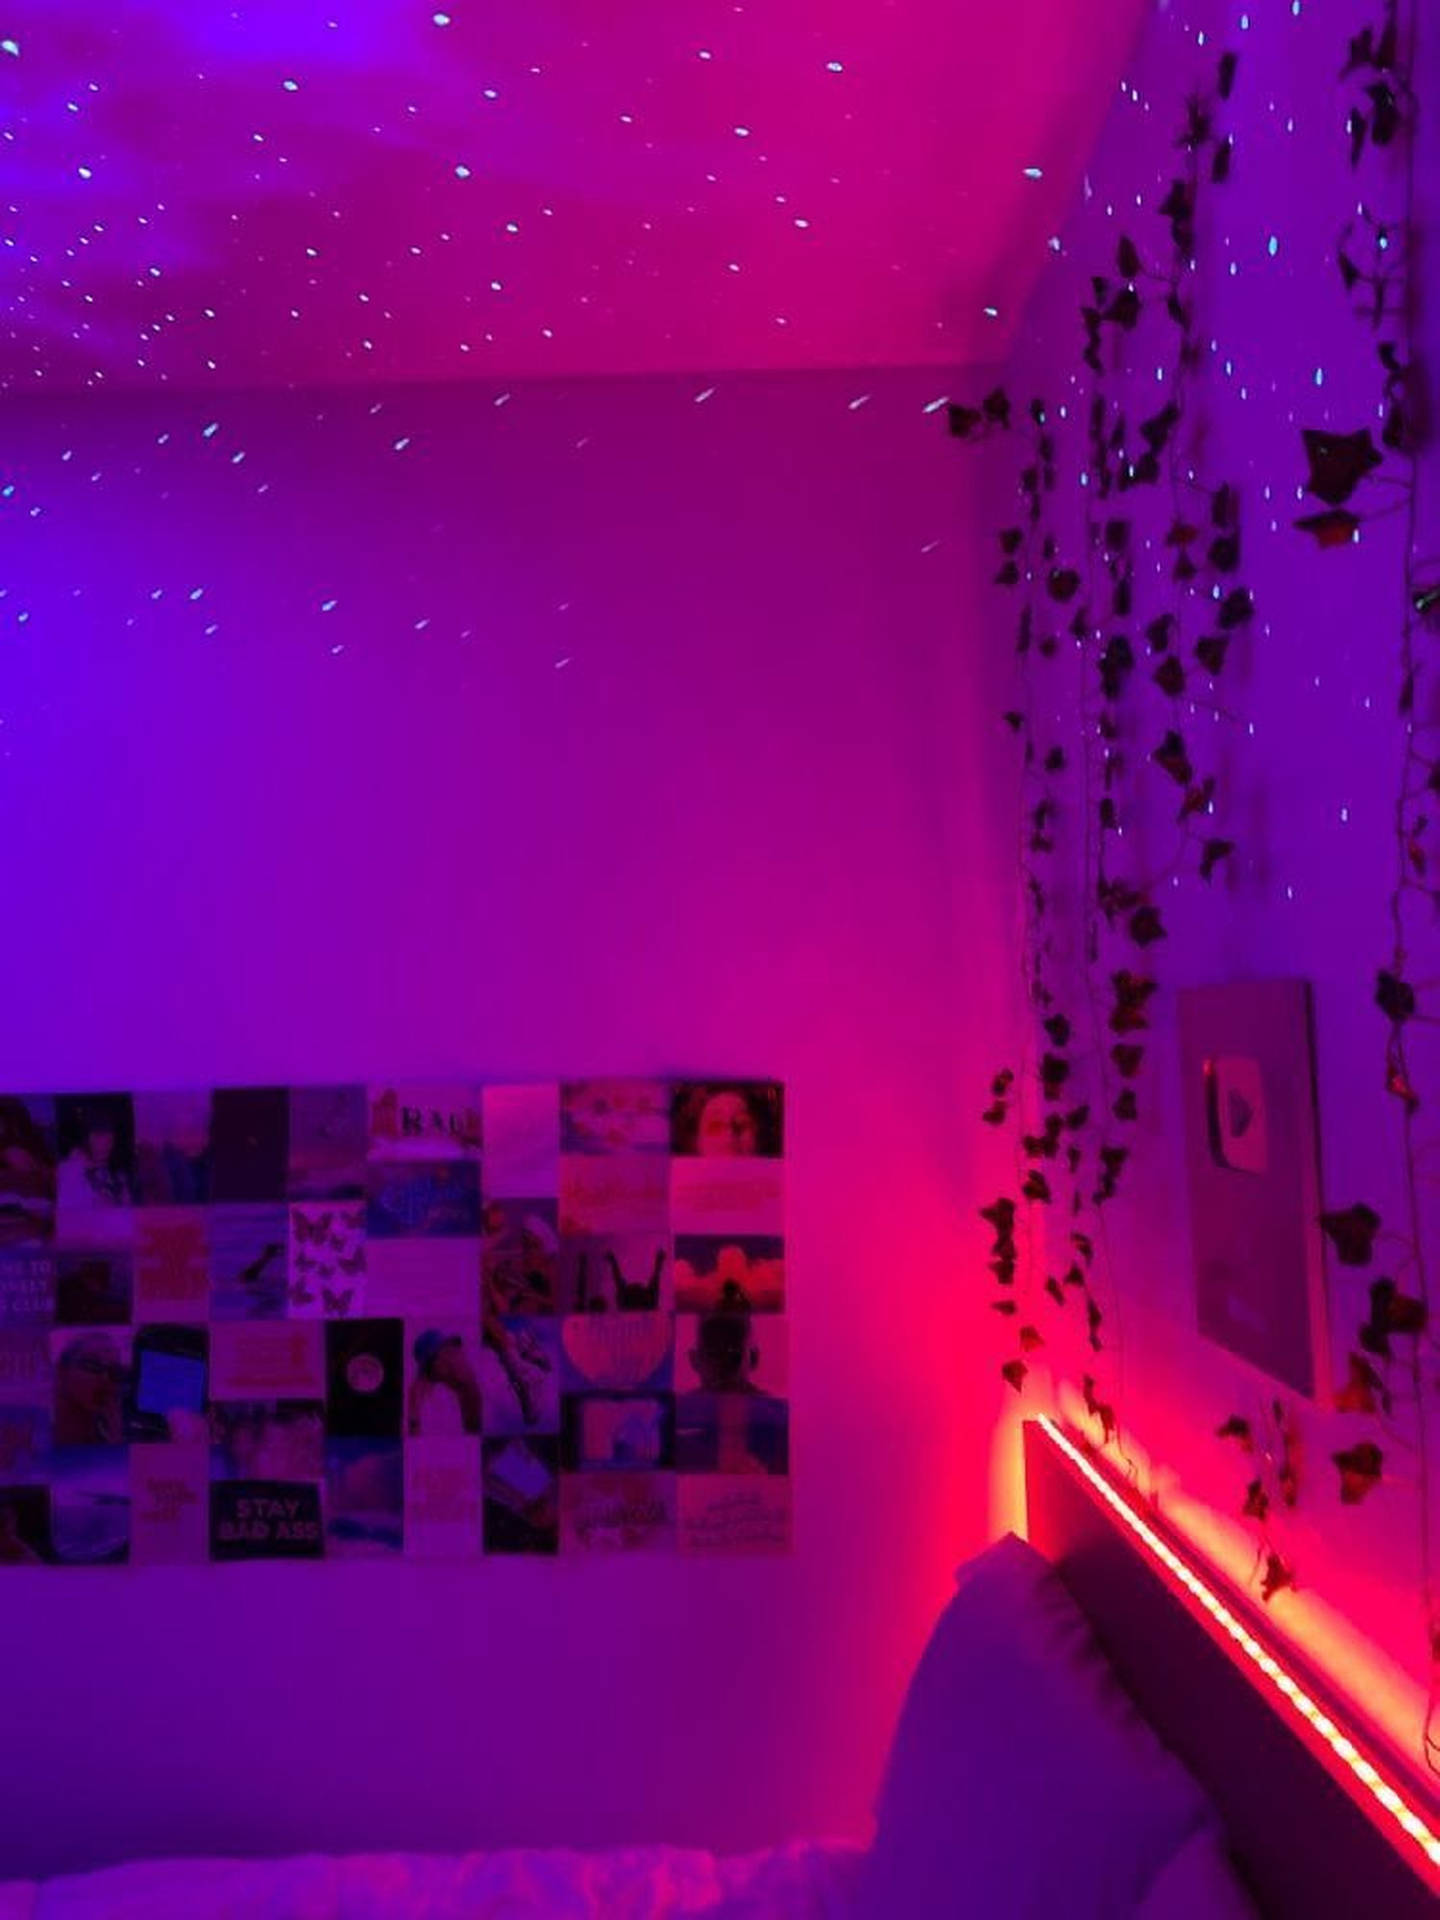 Pink Aesthetic Room Led Light Wallpaper